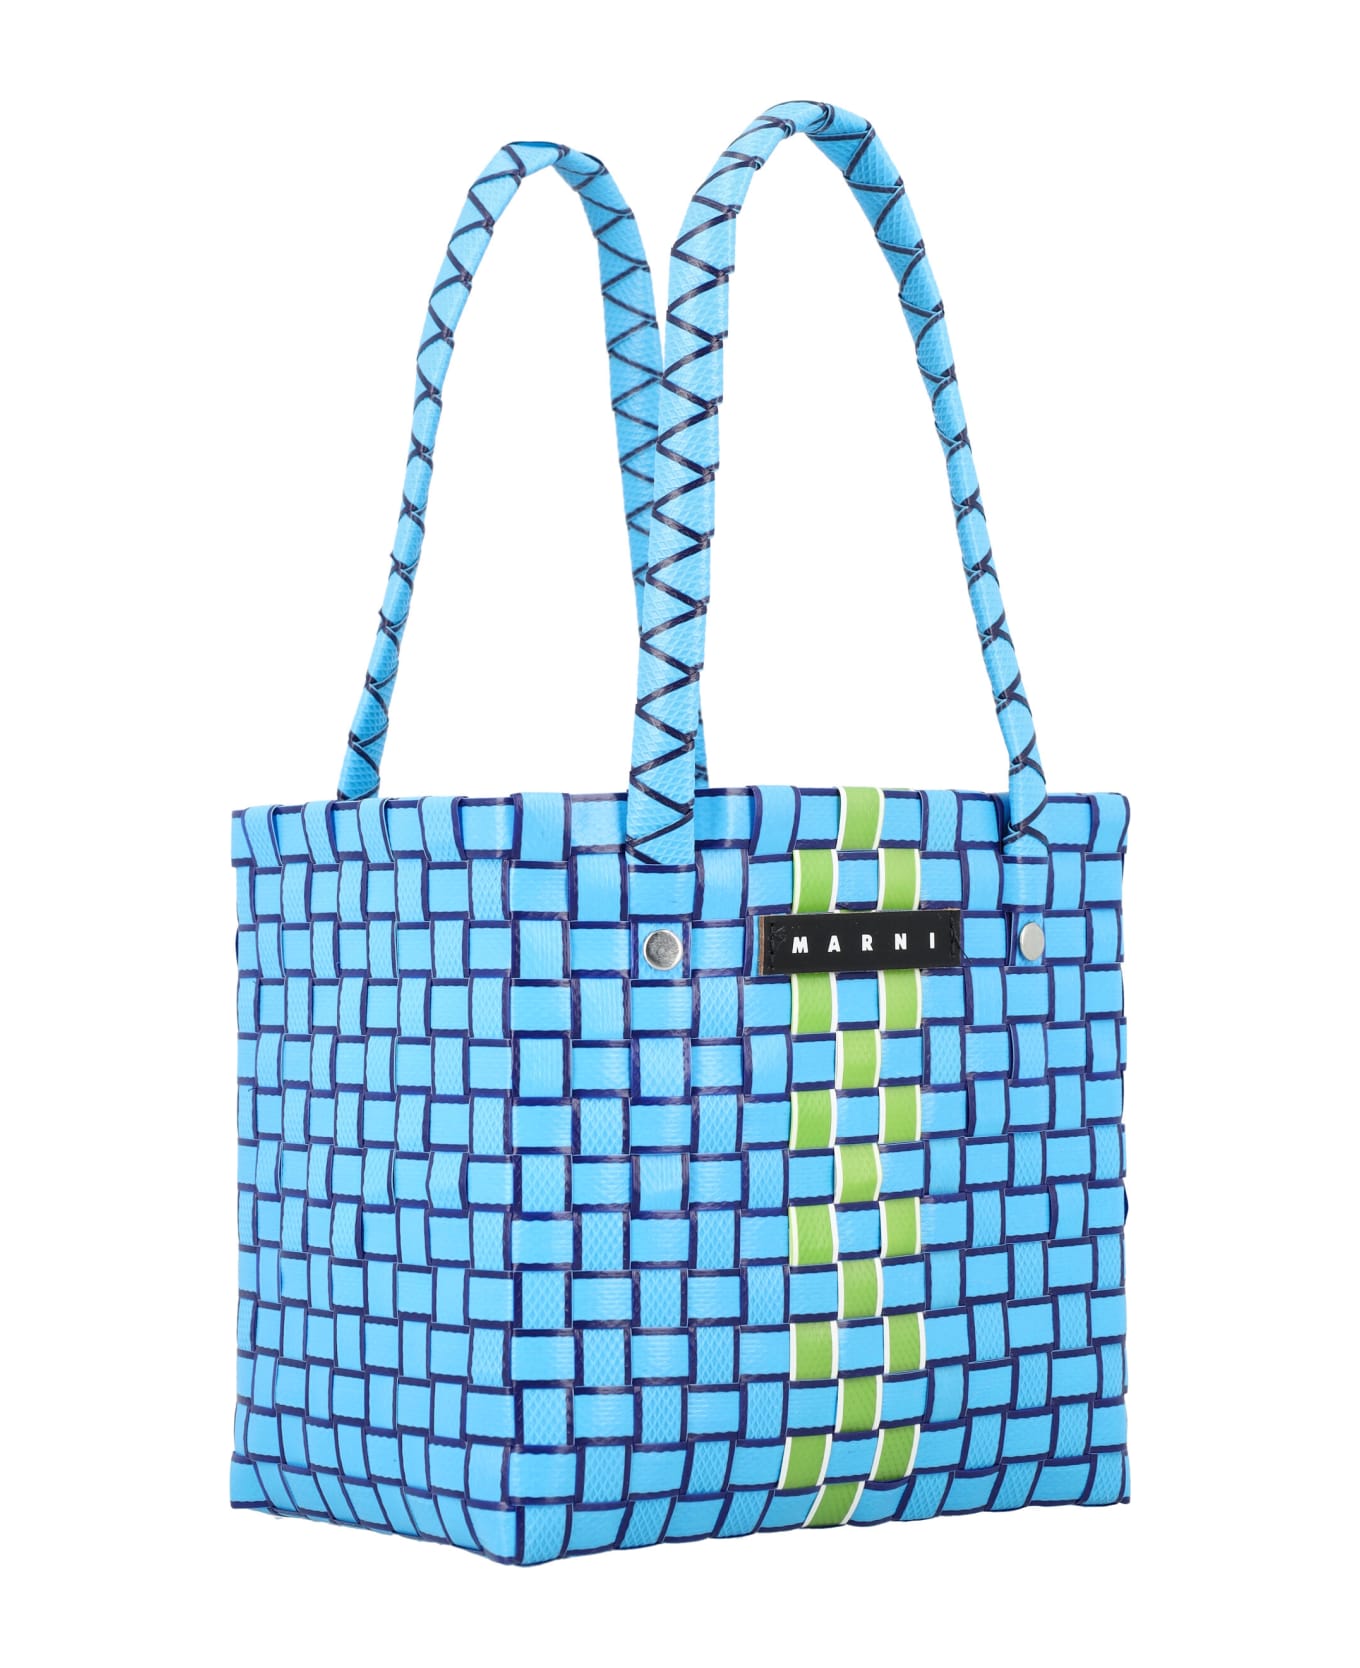 Marni LOGO Box Basket Bag - BLUE